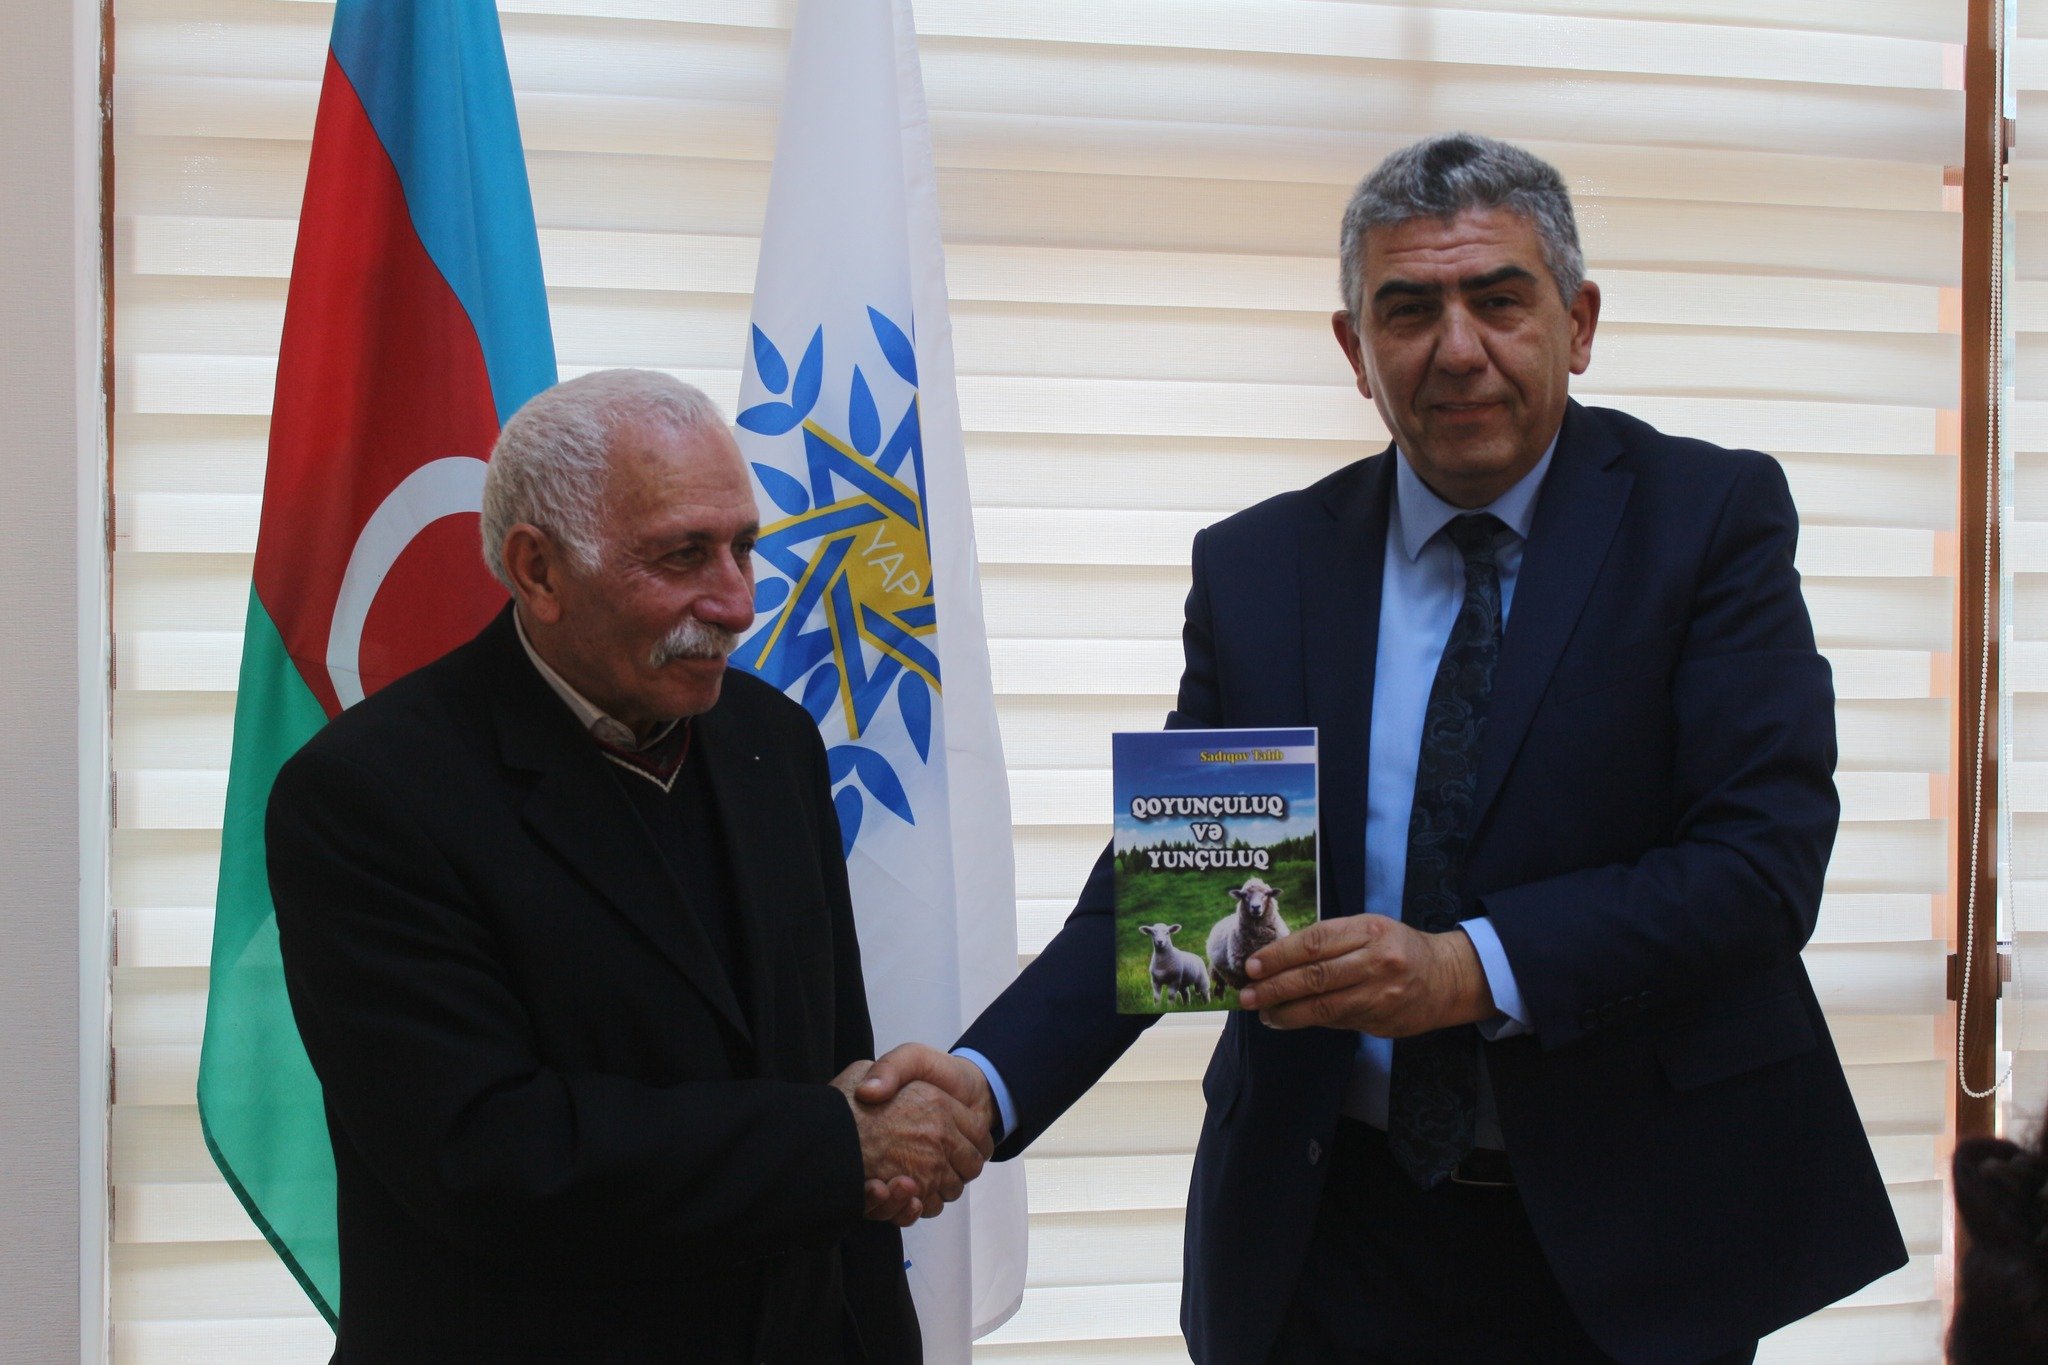 Talıb Sadıqovun müəllifi olduğu "Qoyunçuluq və yunçuluq" kitabının təqdimatı keçirilib. 